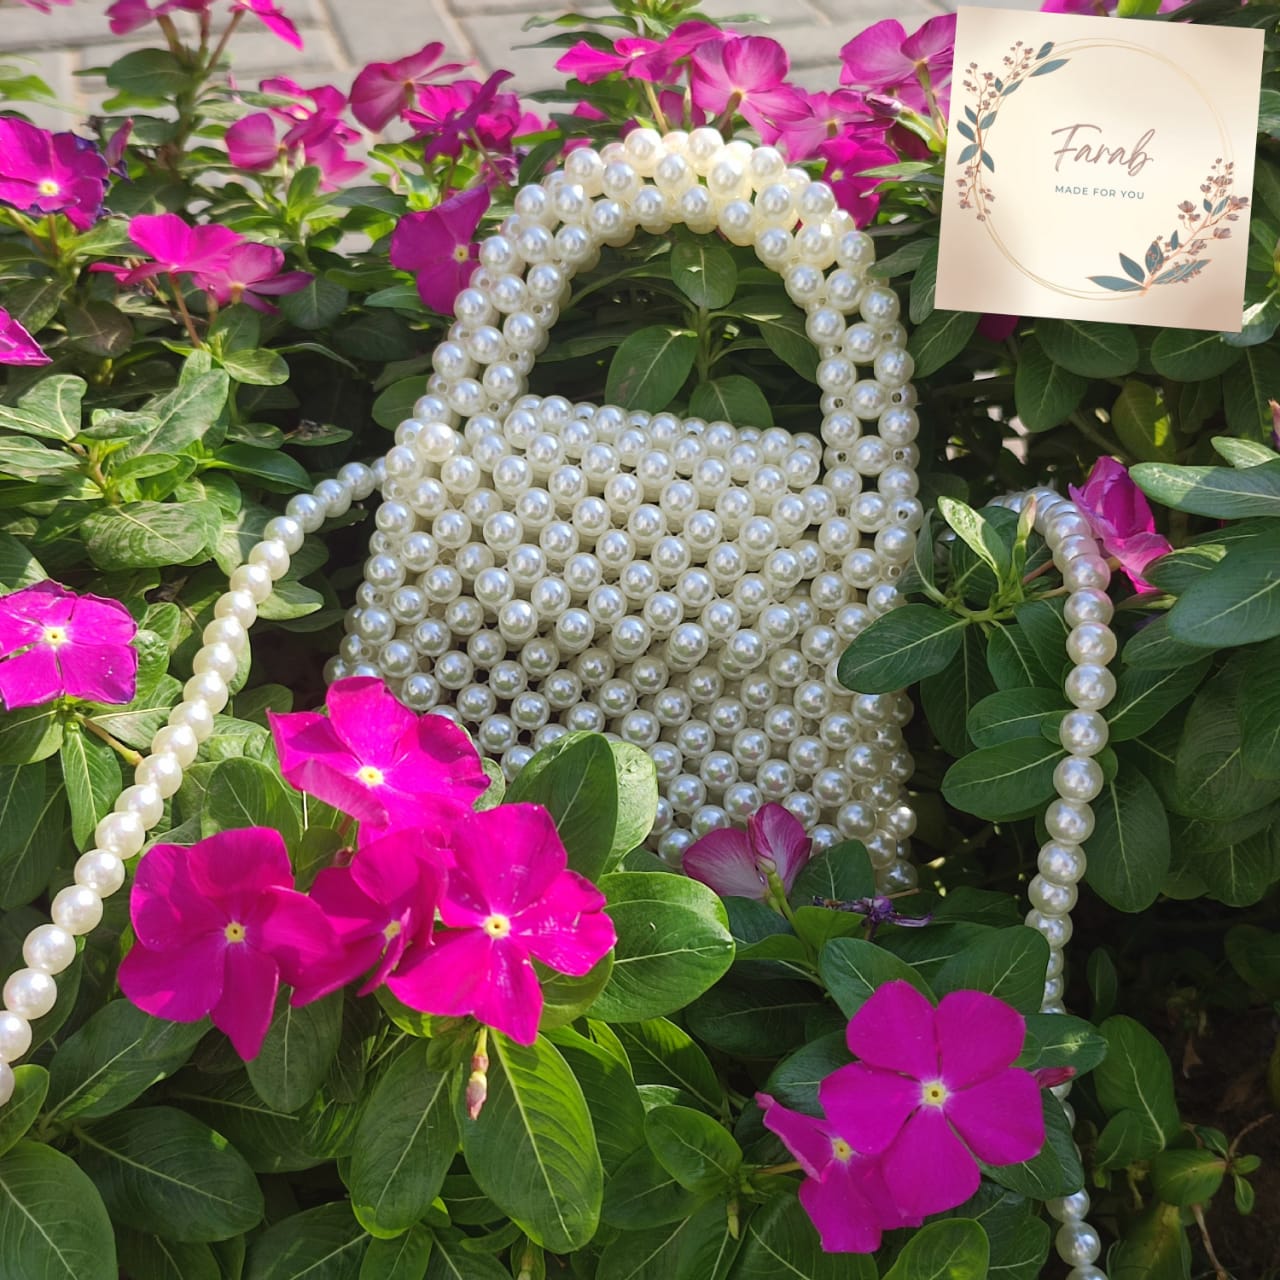 Pearls Handbag